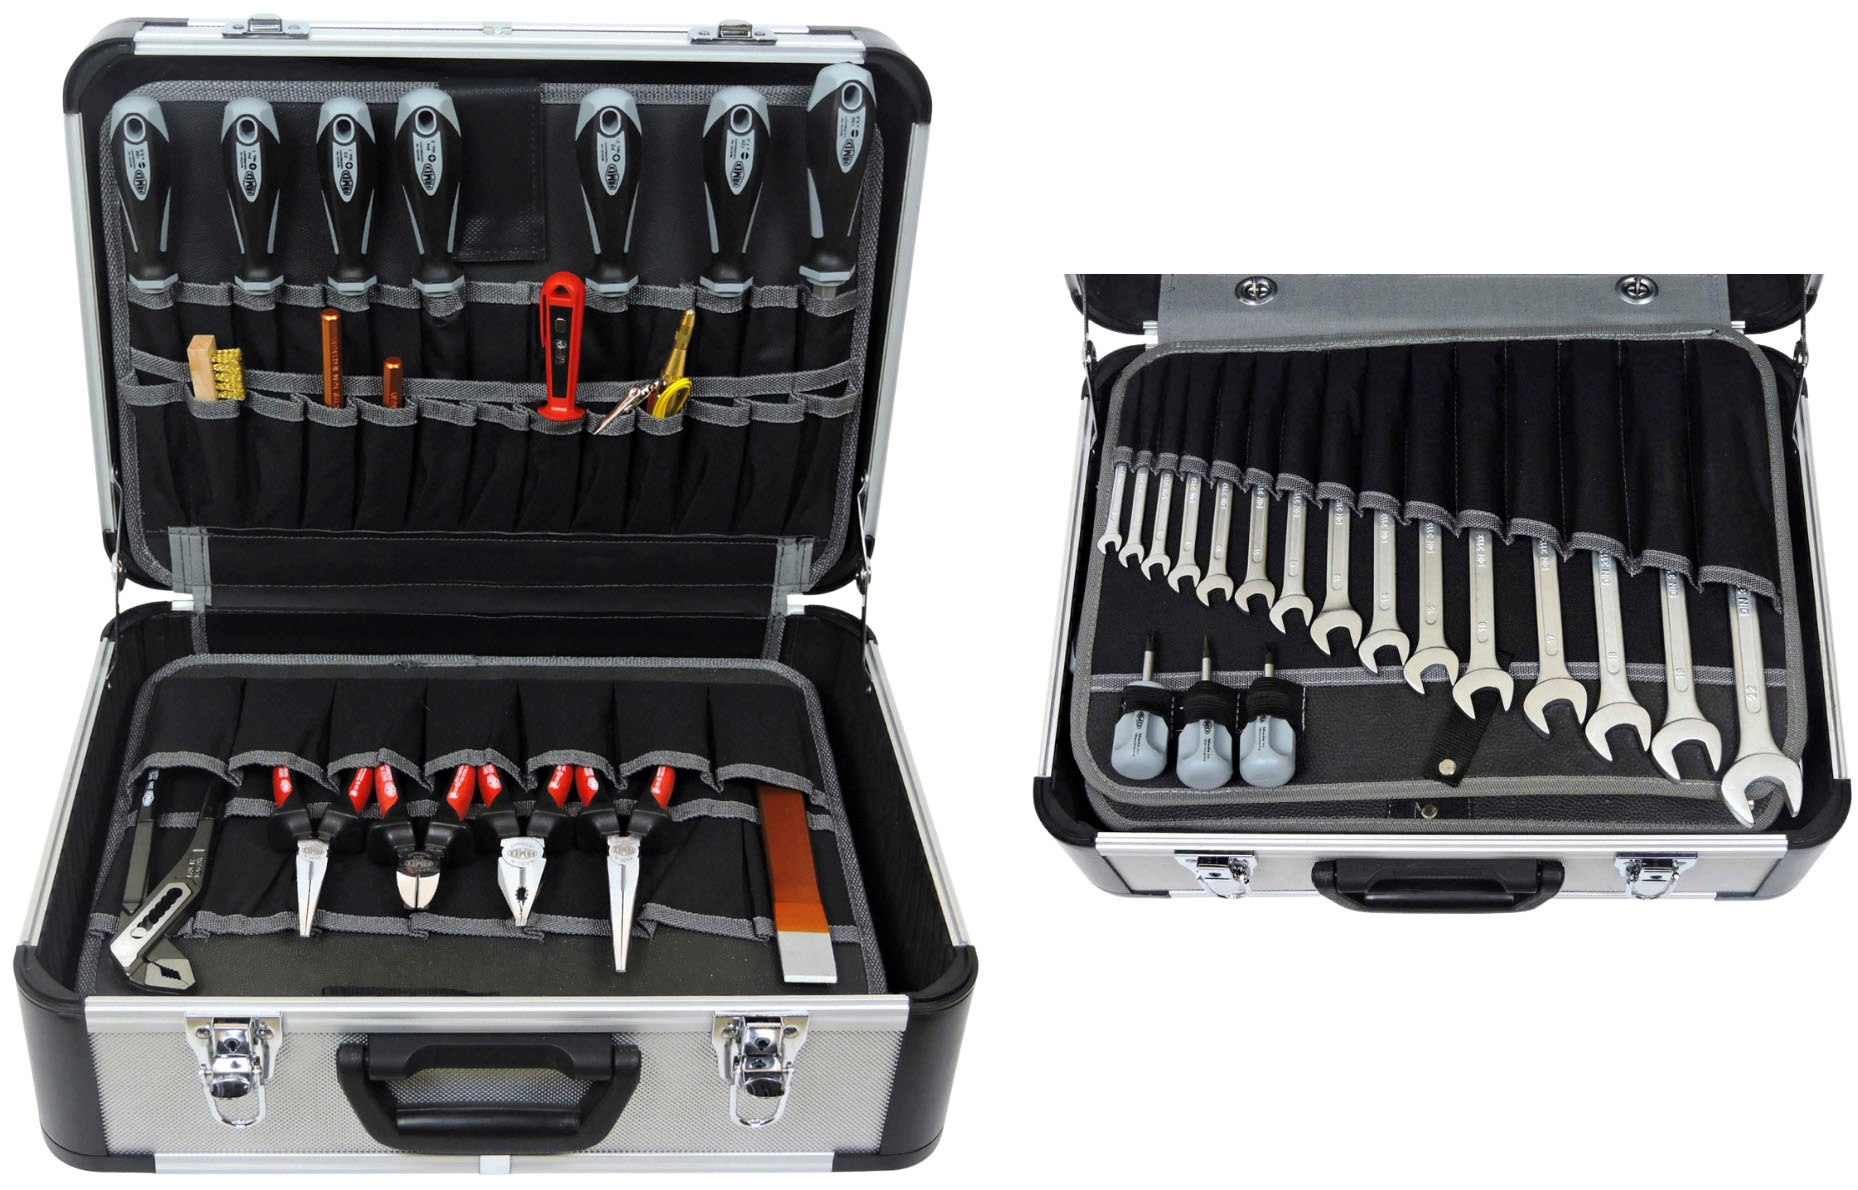 FAMEX Werkzeugset »420-88 - PROFESSIONAL«, Alu-Werkzeugkoffer, Kapazität 30 kg, Platz für weitere Werkzeuge